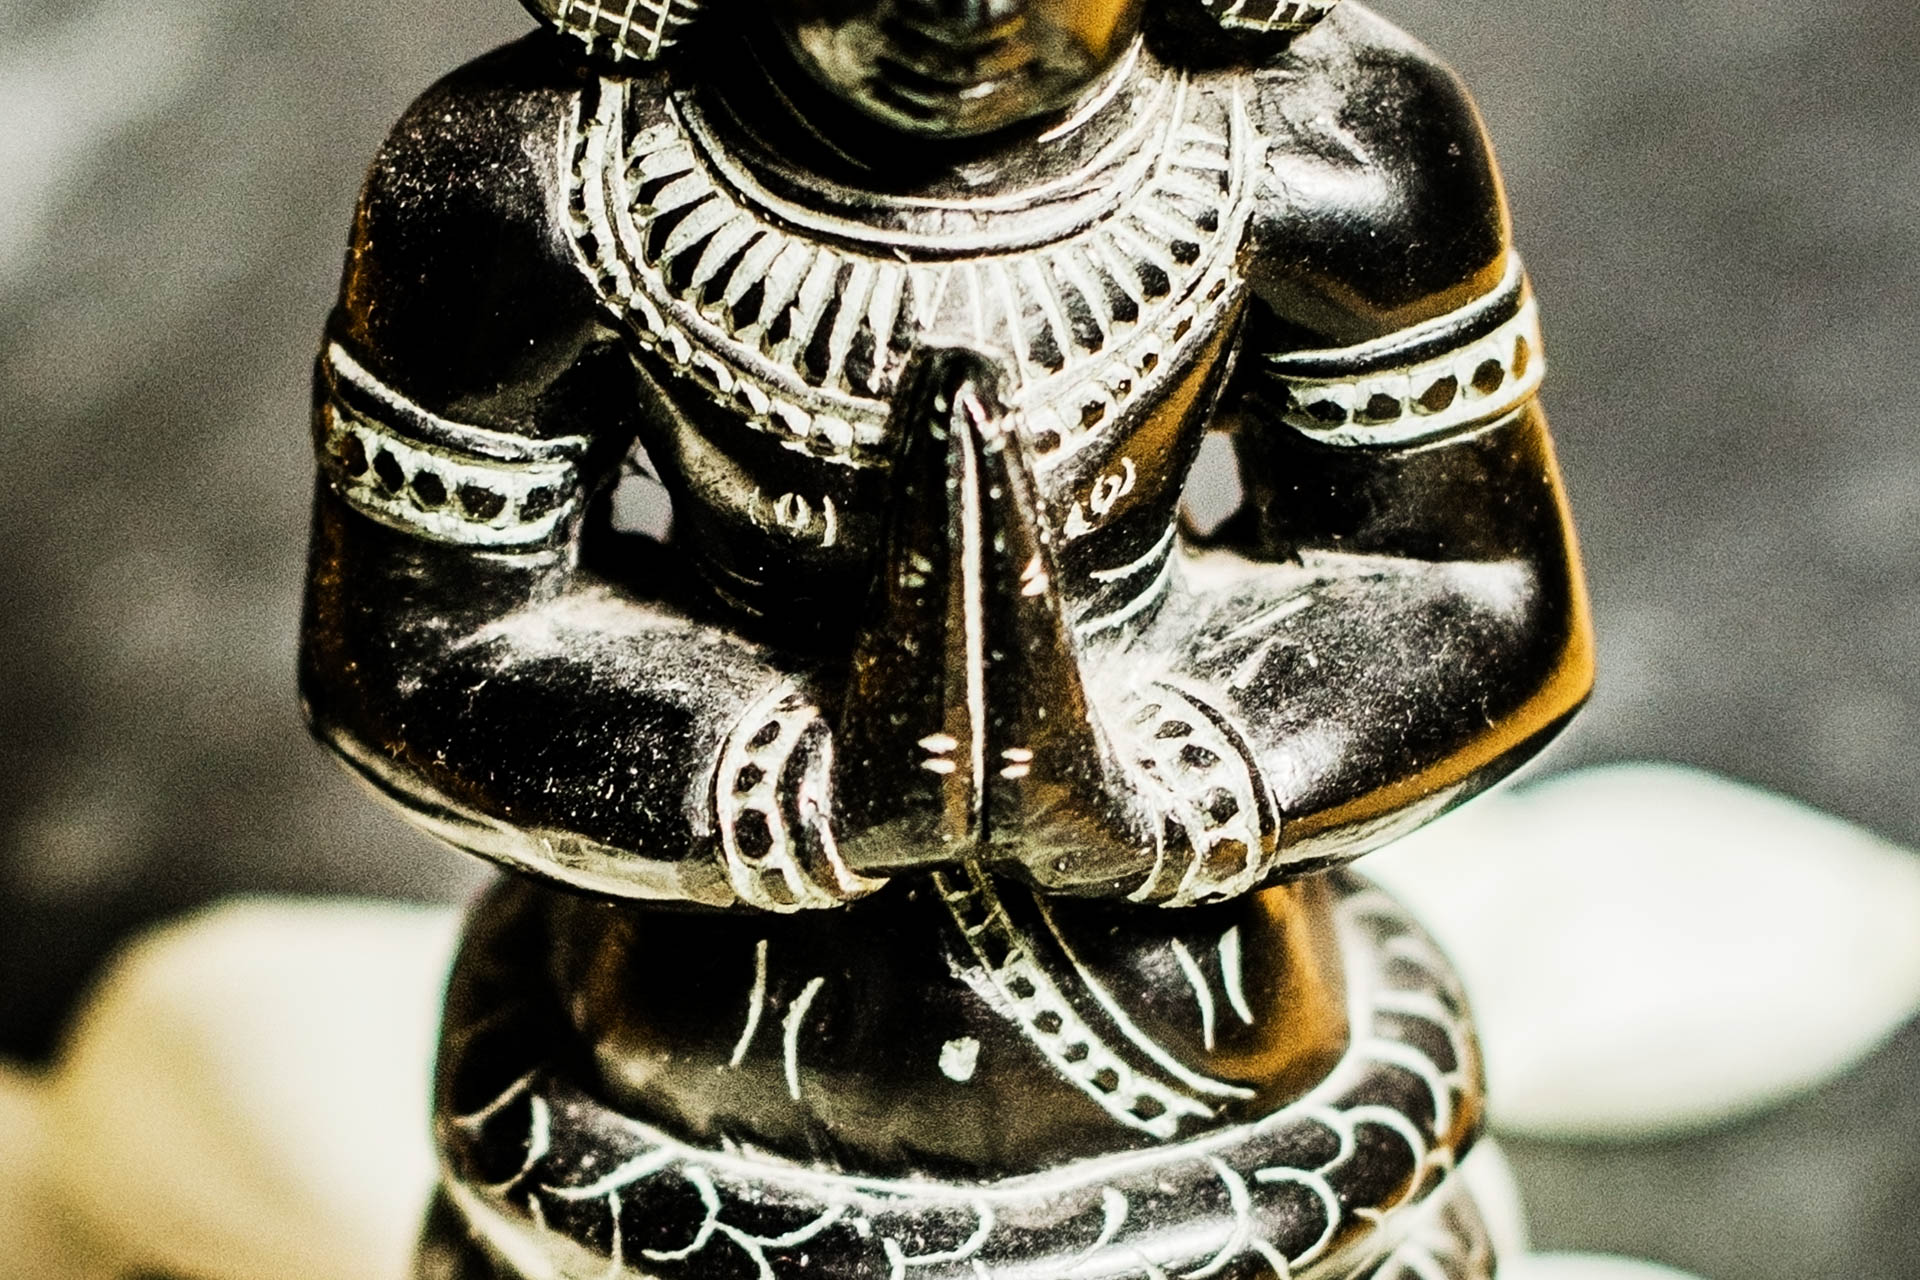 Patanjali Statue in schwarz und weiß